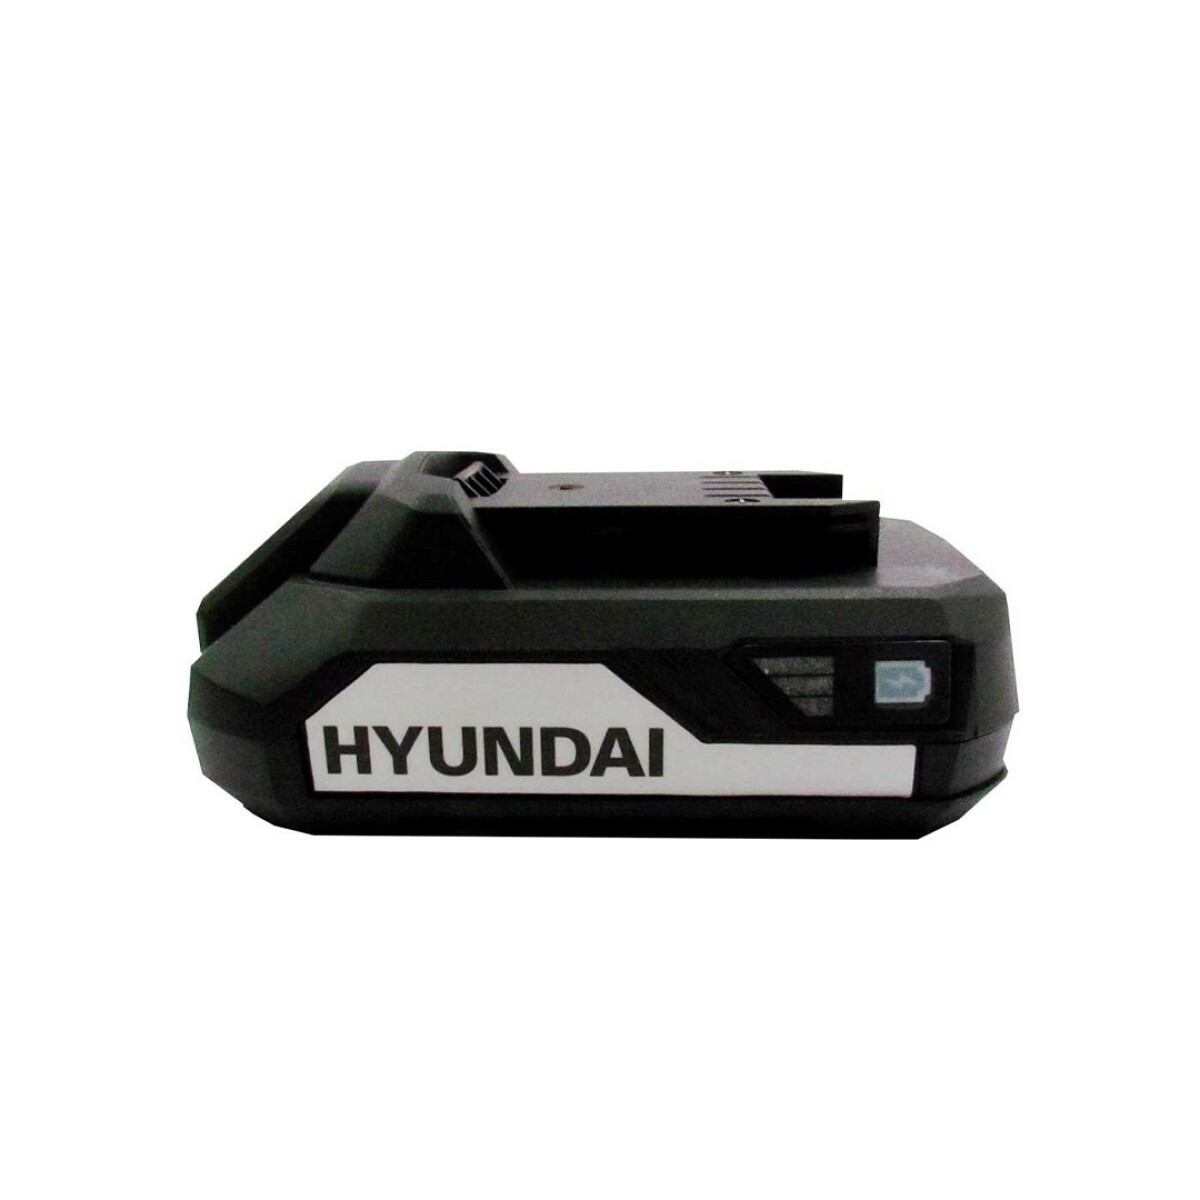 Bateria HYP20 Hyundai 20 V 2.0 Mah 990-5000 - 001 